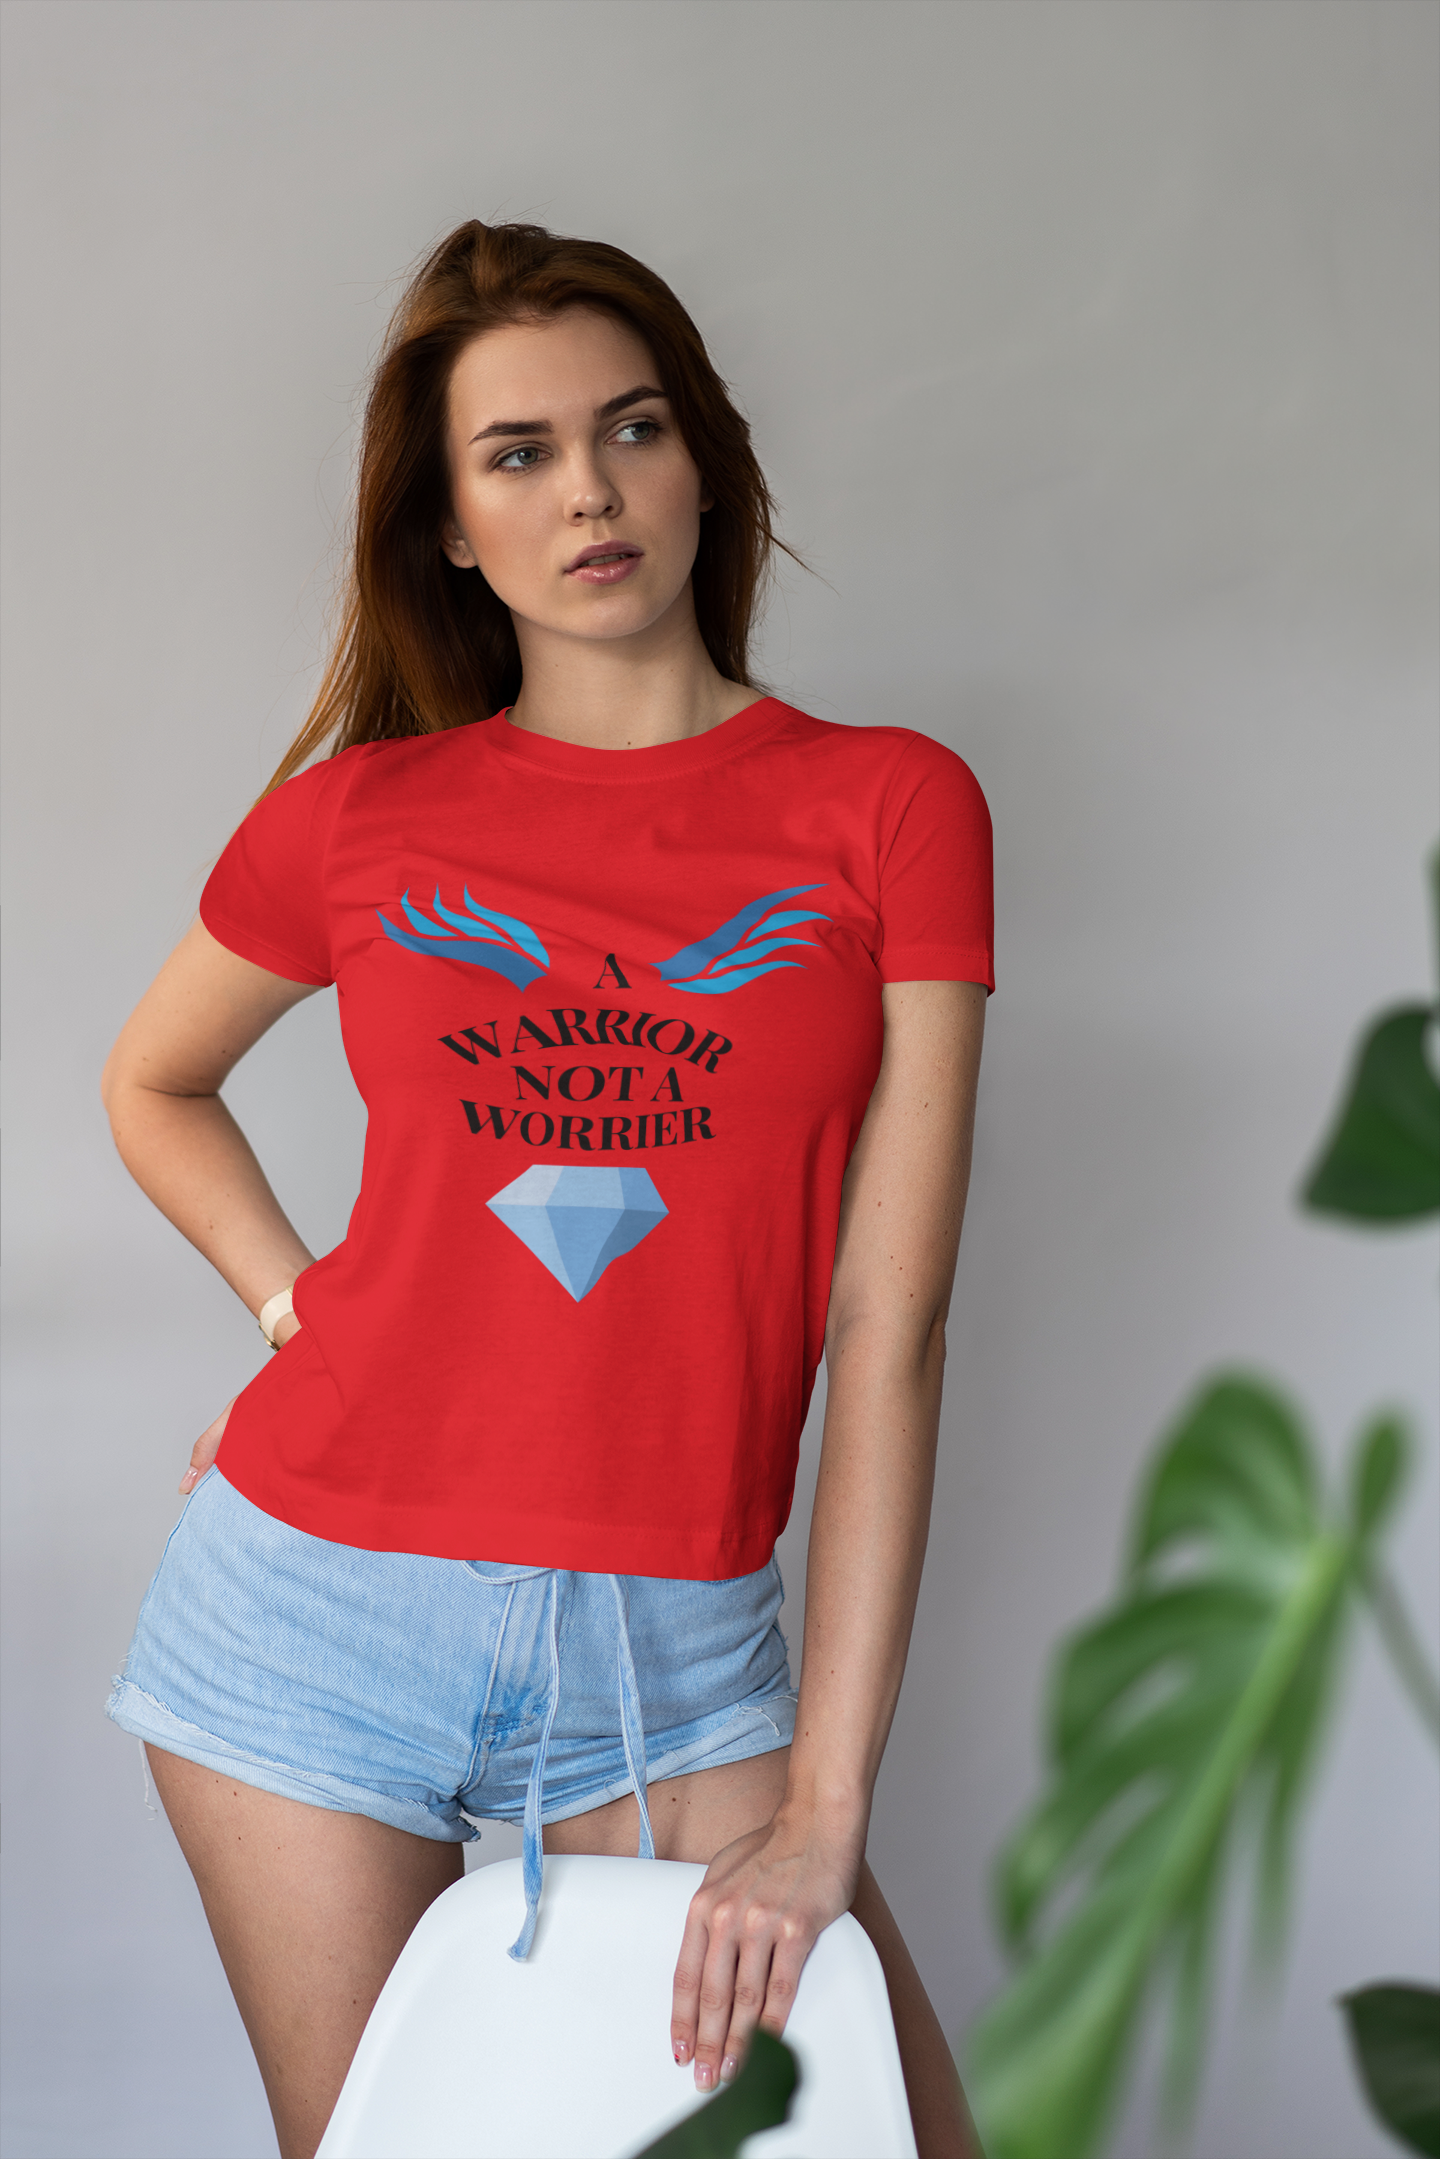 A Warrior Women's Cotton T-Shirt